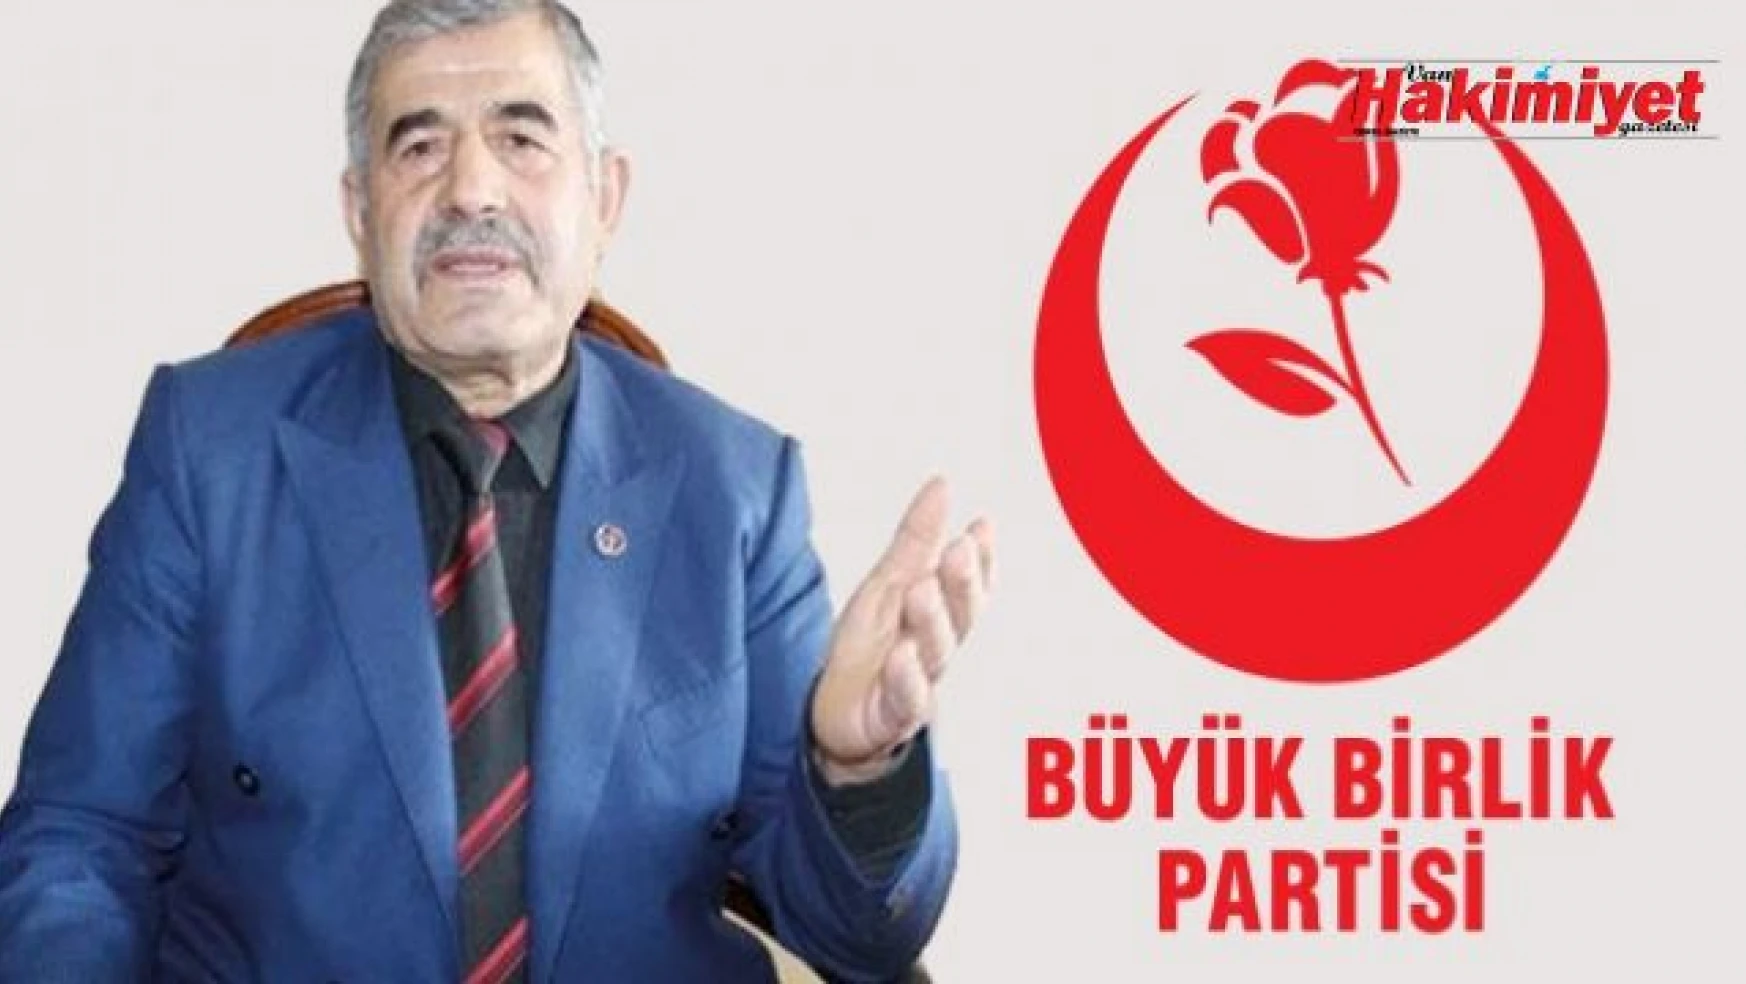 Büyük Birlik Partisi Van İl Başkanı Mevlüt Kaya'dan, Van milletvekillerine eleştiri